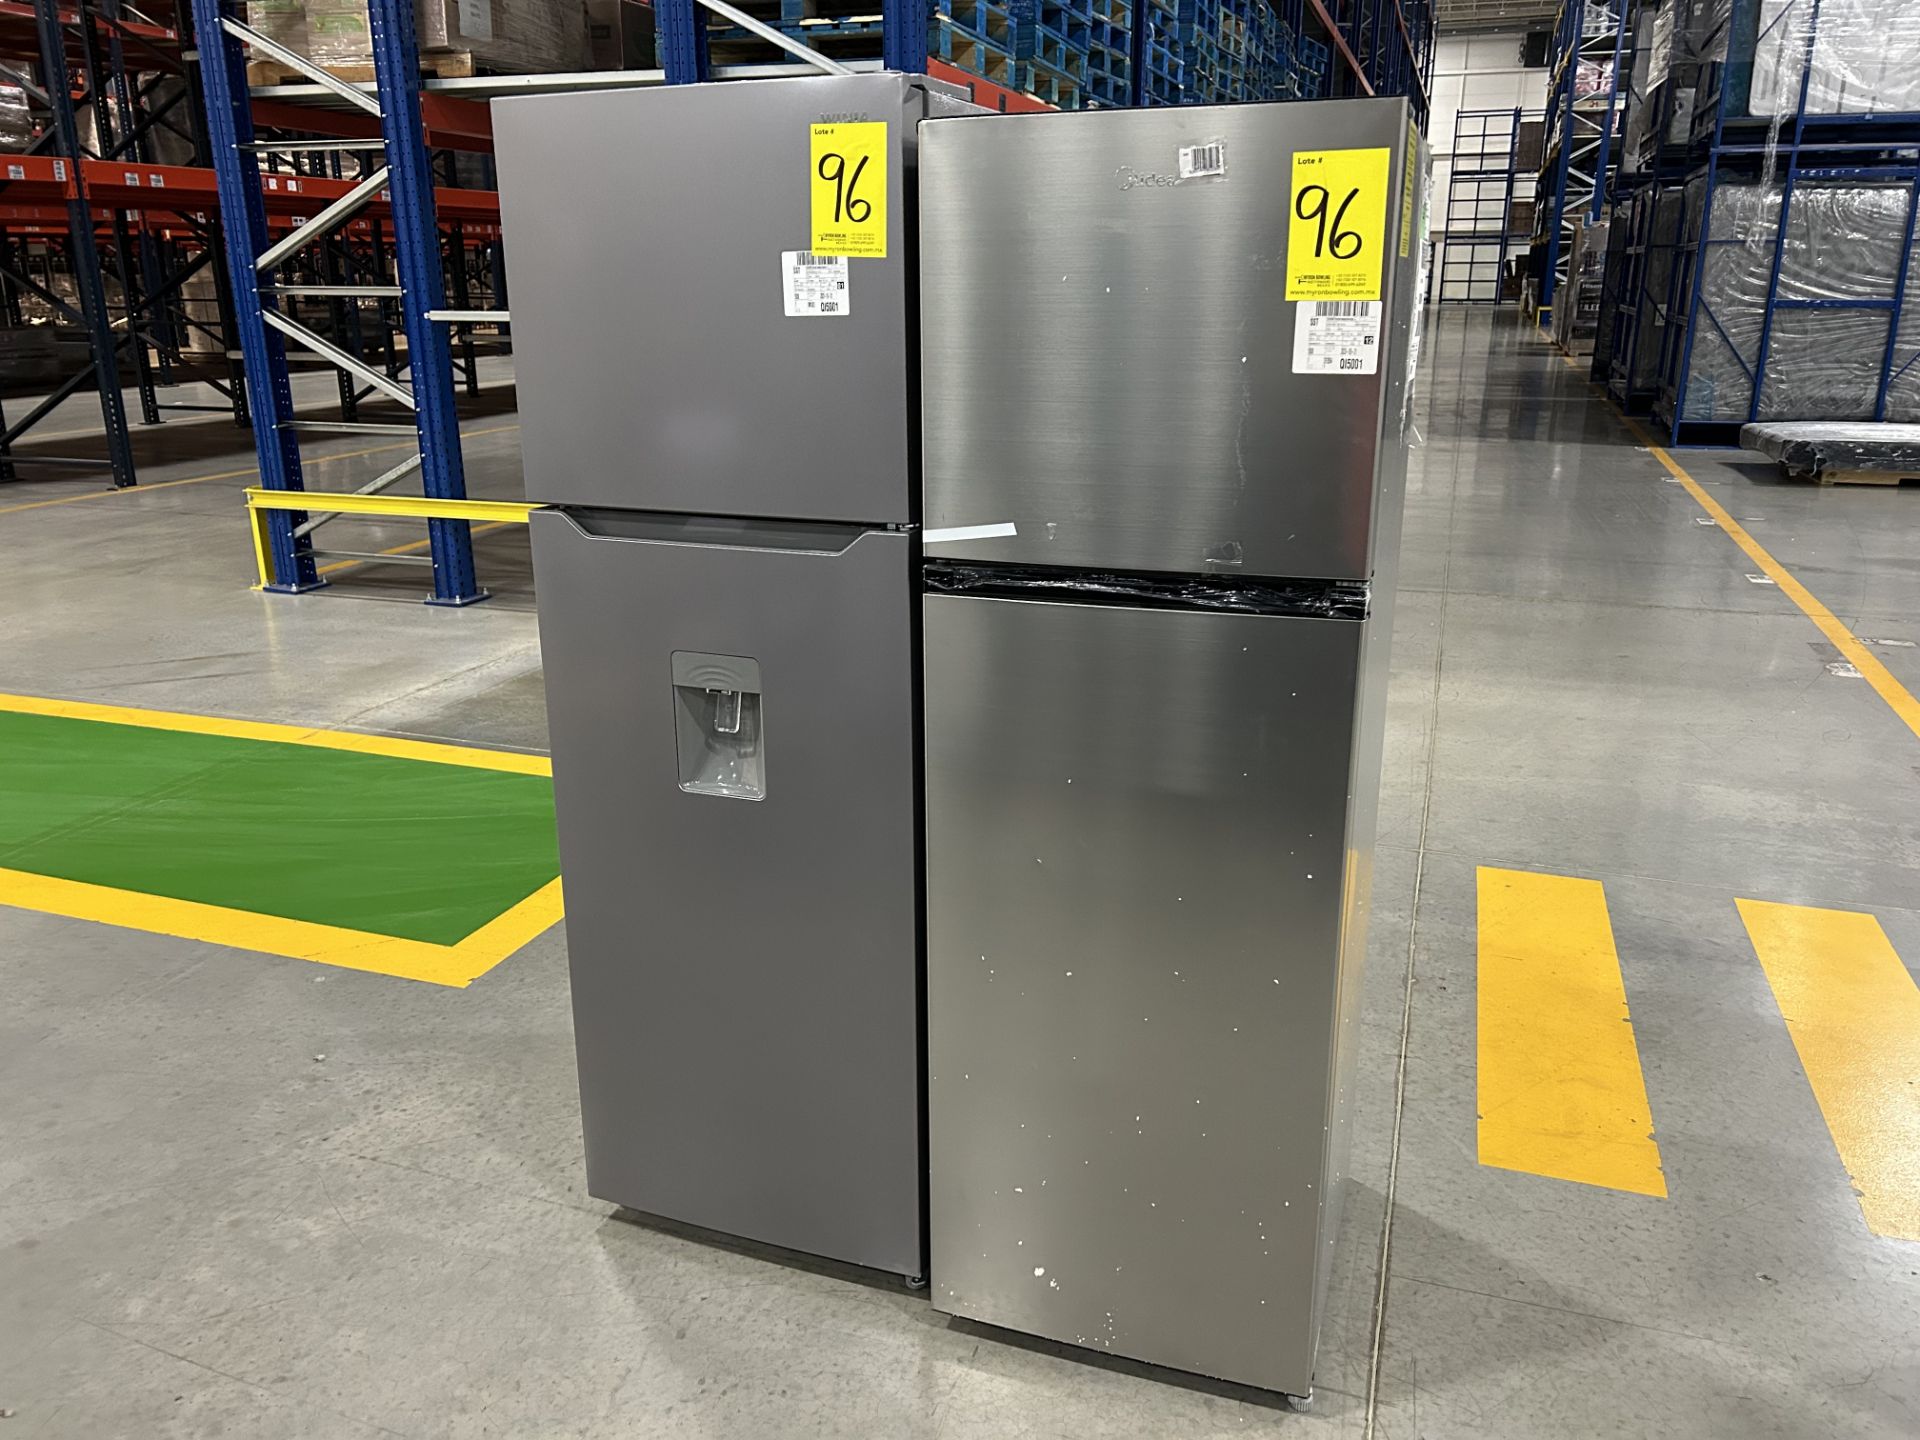 Lote de 2 Refrigeradores, contiene: 1 Refrigerador con Dispensador de Agua Marca WINIA, Modelo WRT1 - Image 2 of 6